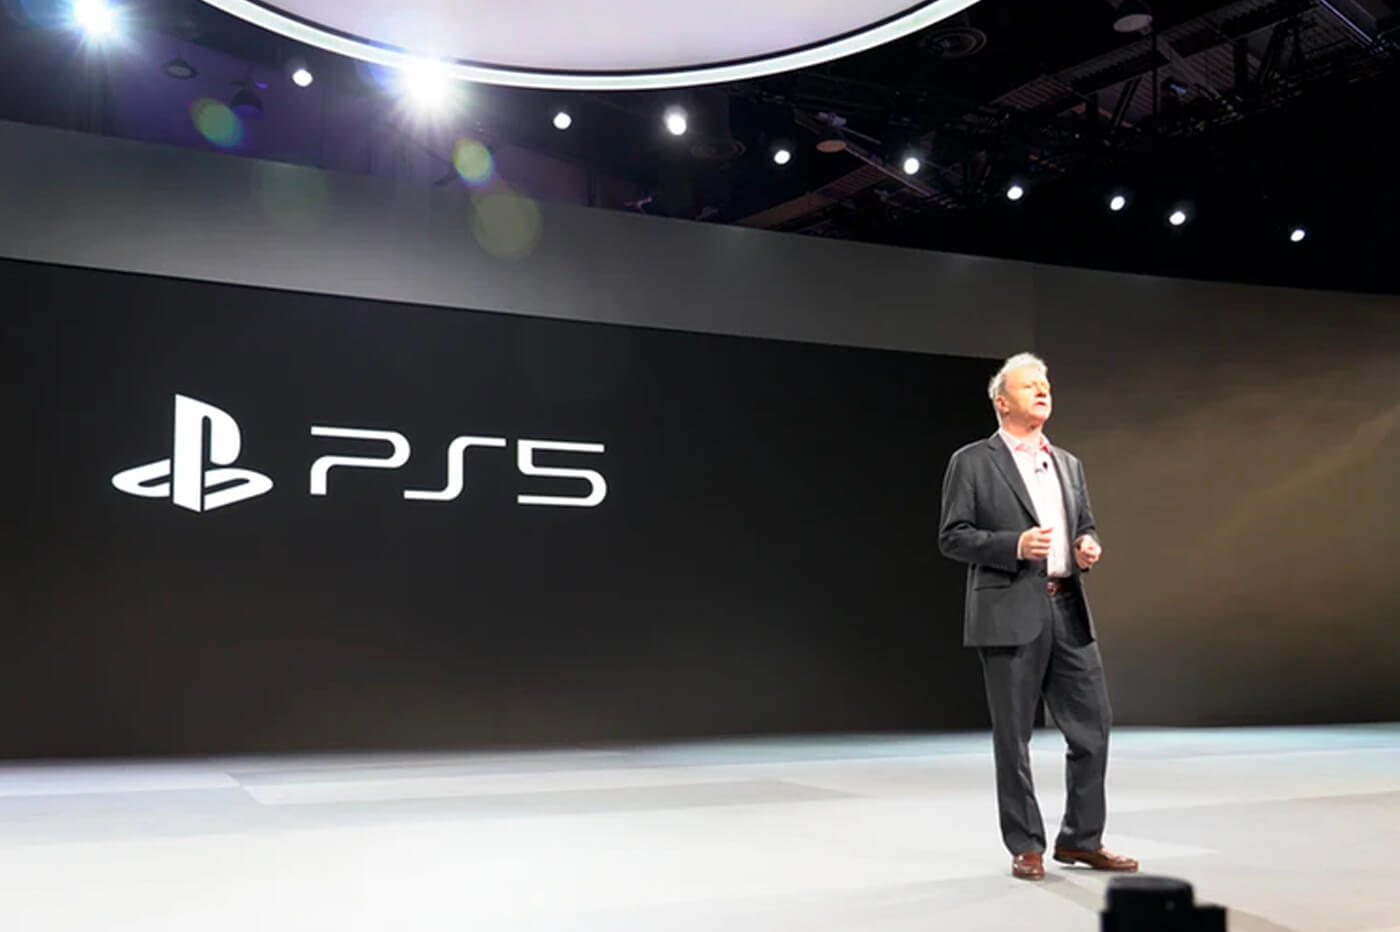 Fejtegetések láttak napvilágot a PS5 árazásáról